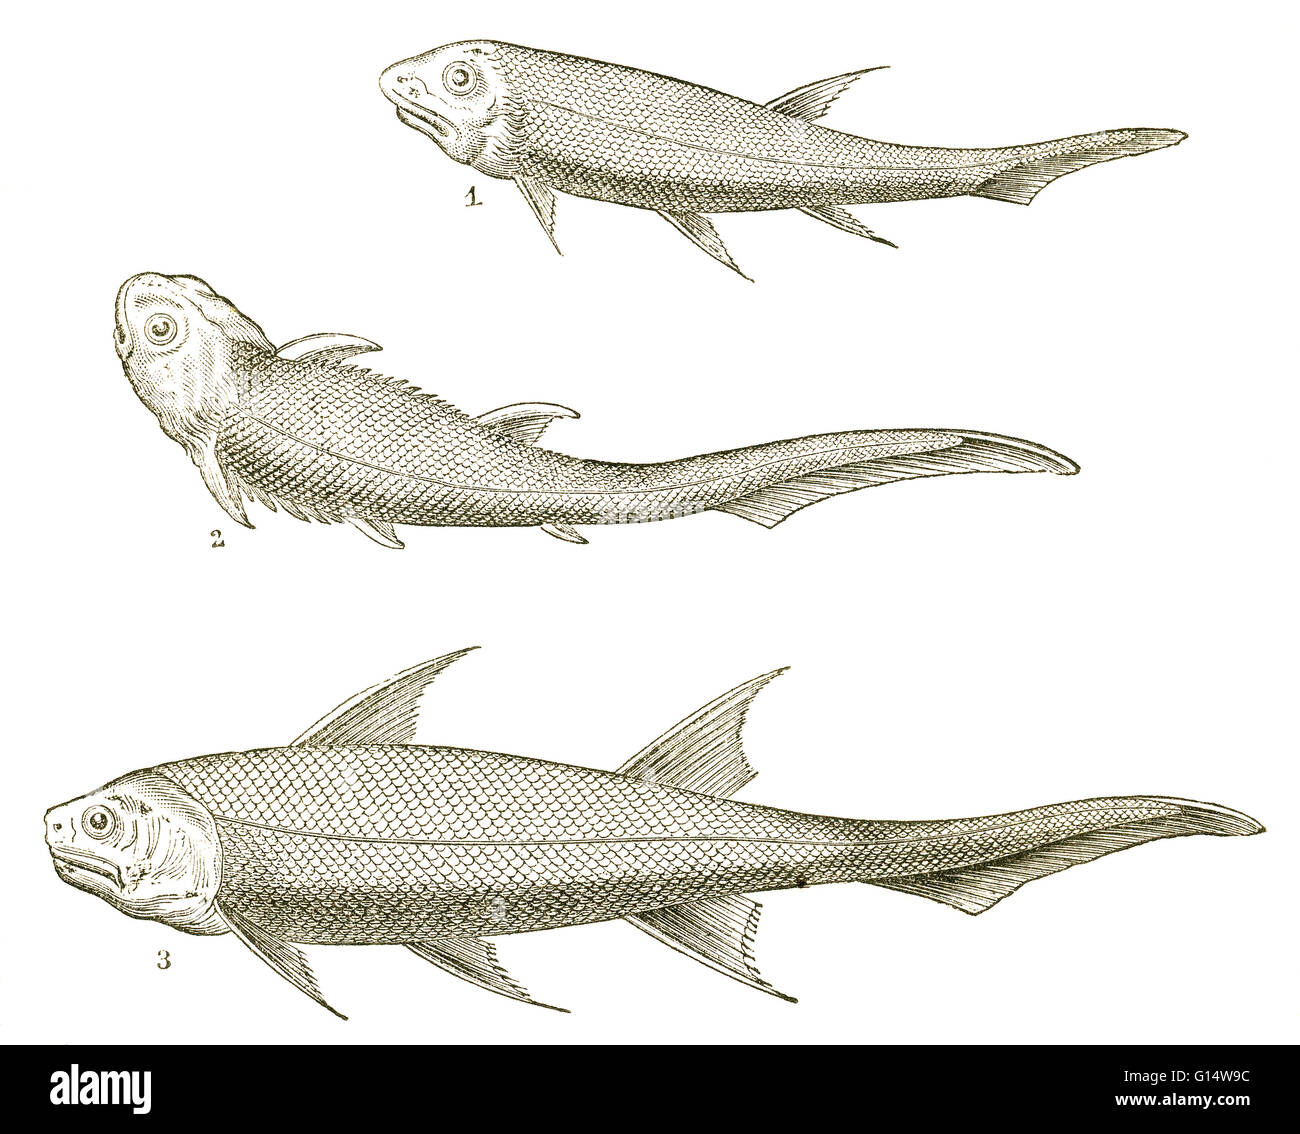 Drei Arten von Fisch aus dem Devon Periode, darunter Acanthodes, (1), Climatius (2) und Diplacanthus (3).  Diese Fische sind alle Acanthodians oder "stacheligen Haie", mit Eigenschaften der knöchernen und knorpeligen Fische.  Sie sind Hai-förmigen, aber nicht Tec Stockfoto